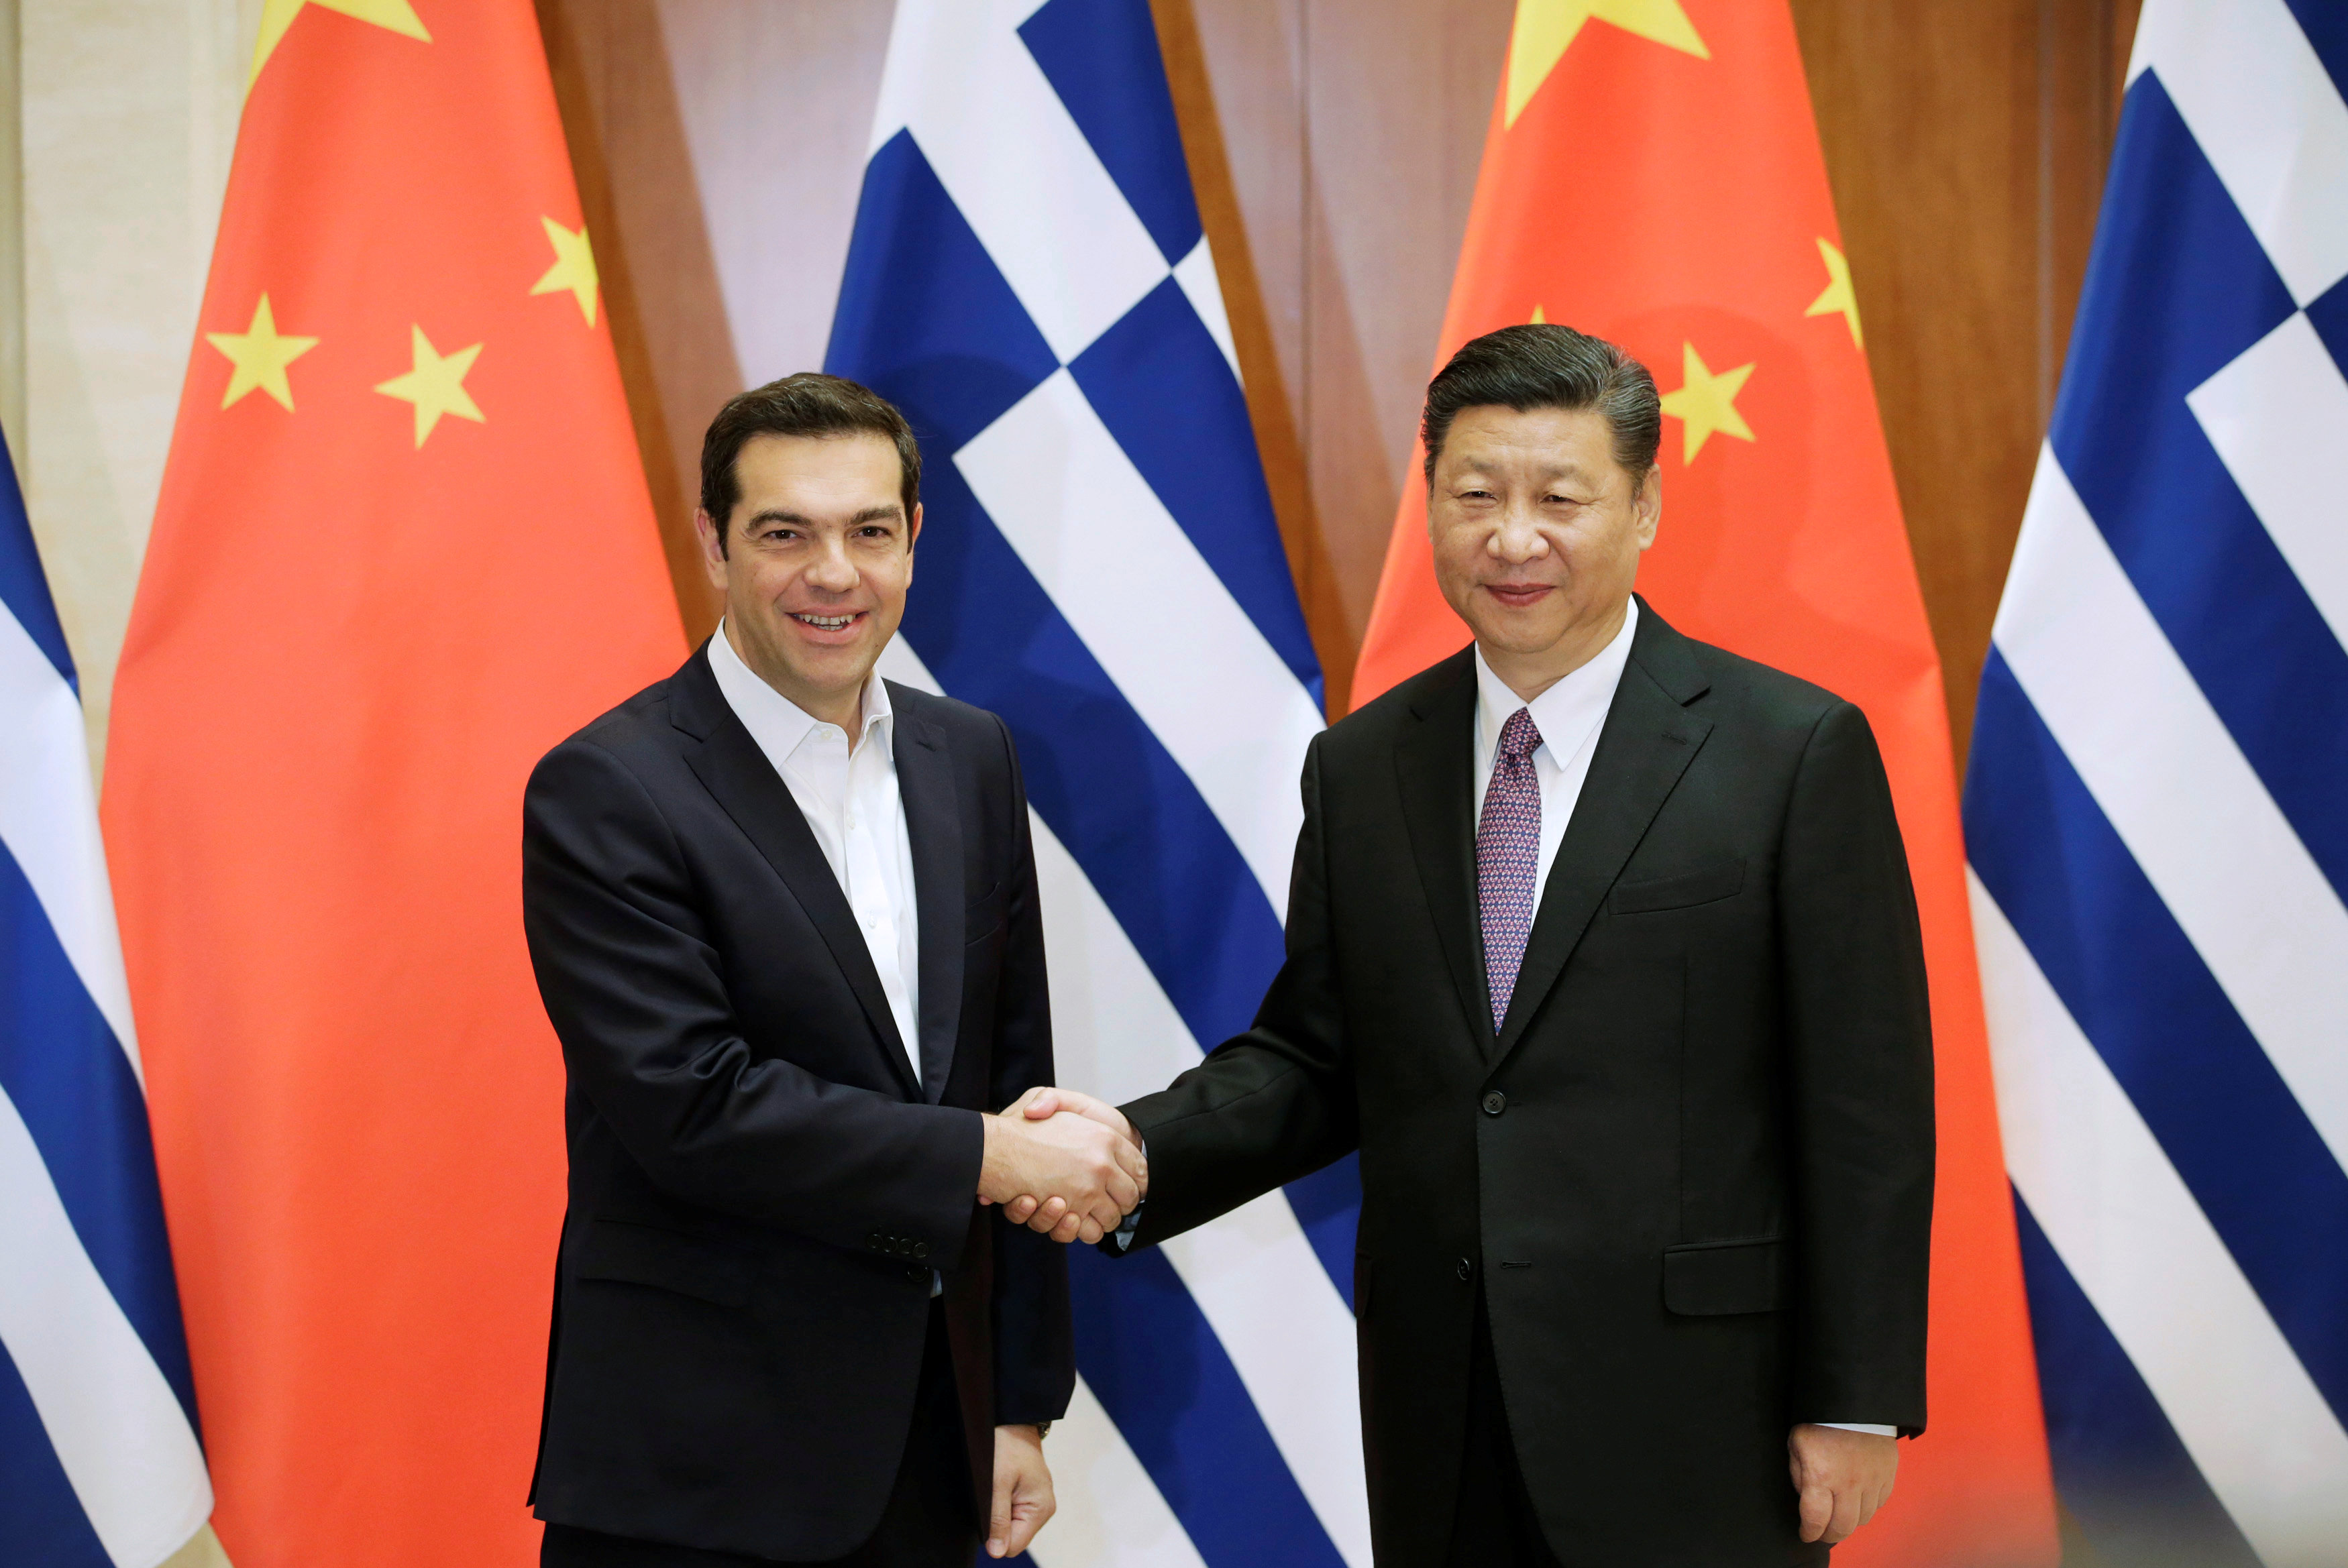 الرئيس الصينى يستقبل رئيس وزراء اليونان بمنتدى الطريق والحزام